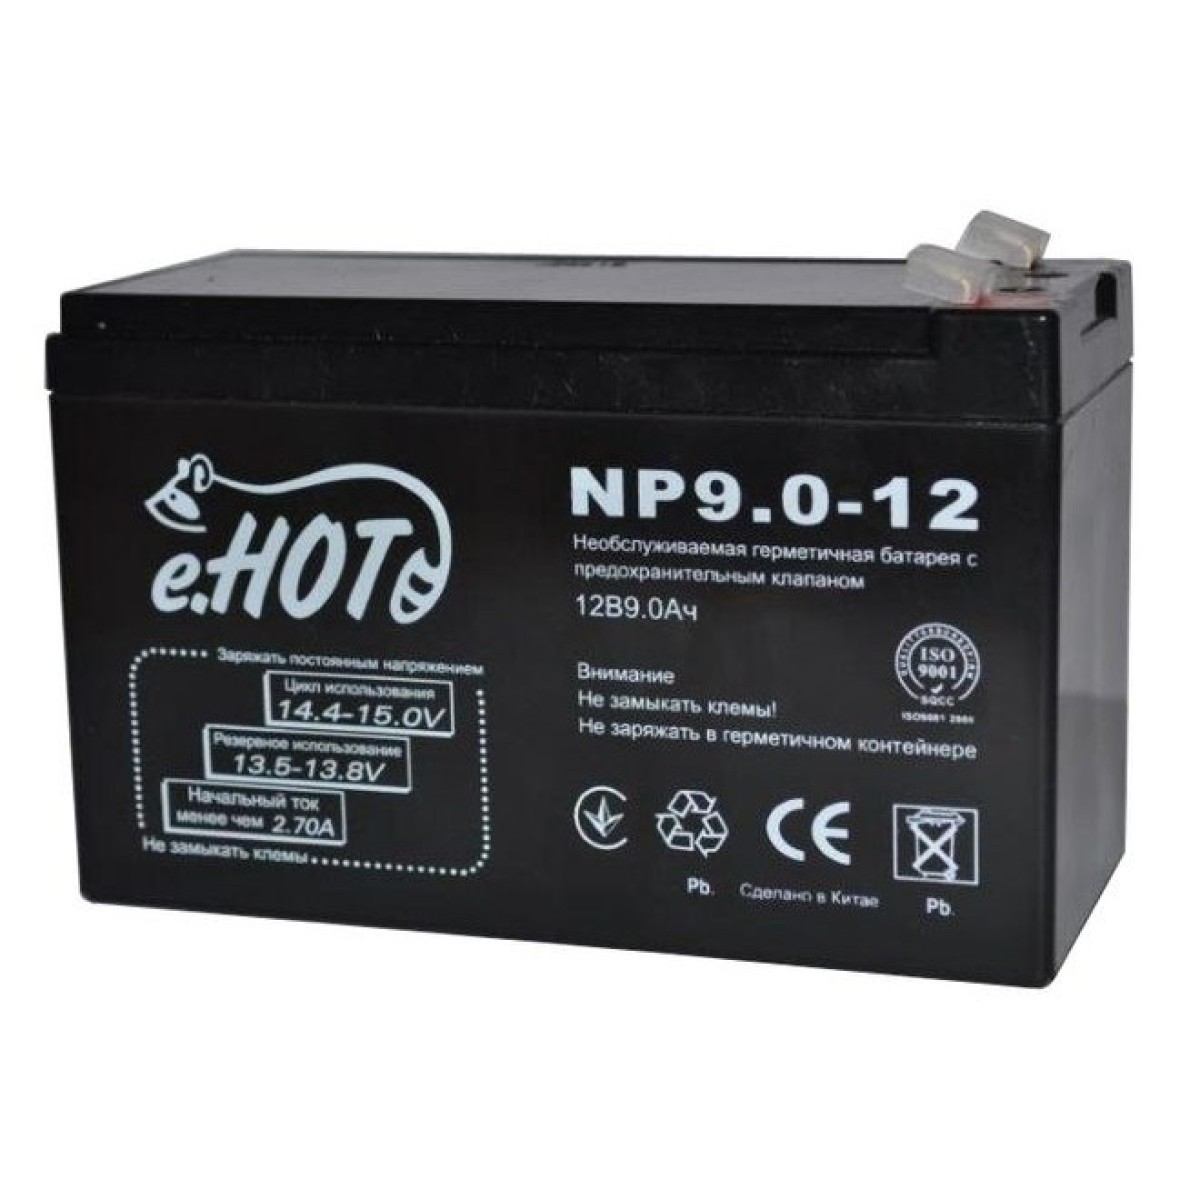 Акумуляторна батарея Enot NP9.0-12 12V 9Ah (EnotNP9.0-12) 256_256.jpg